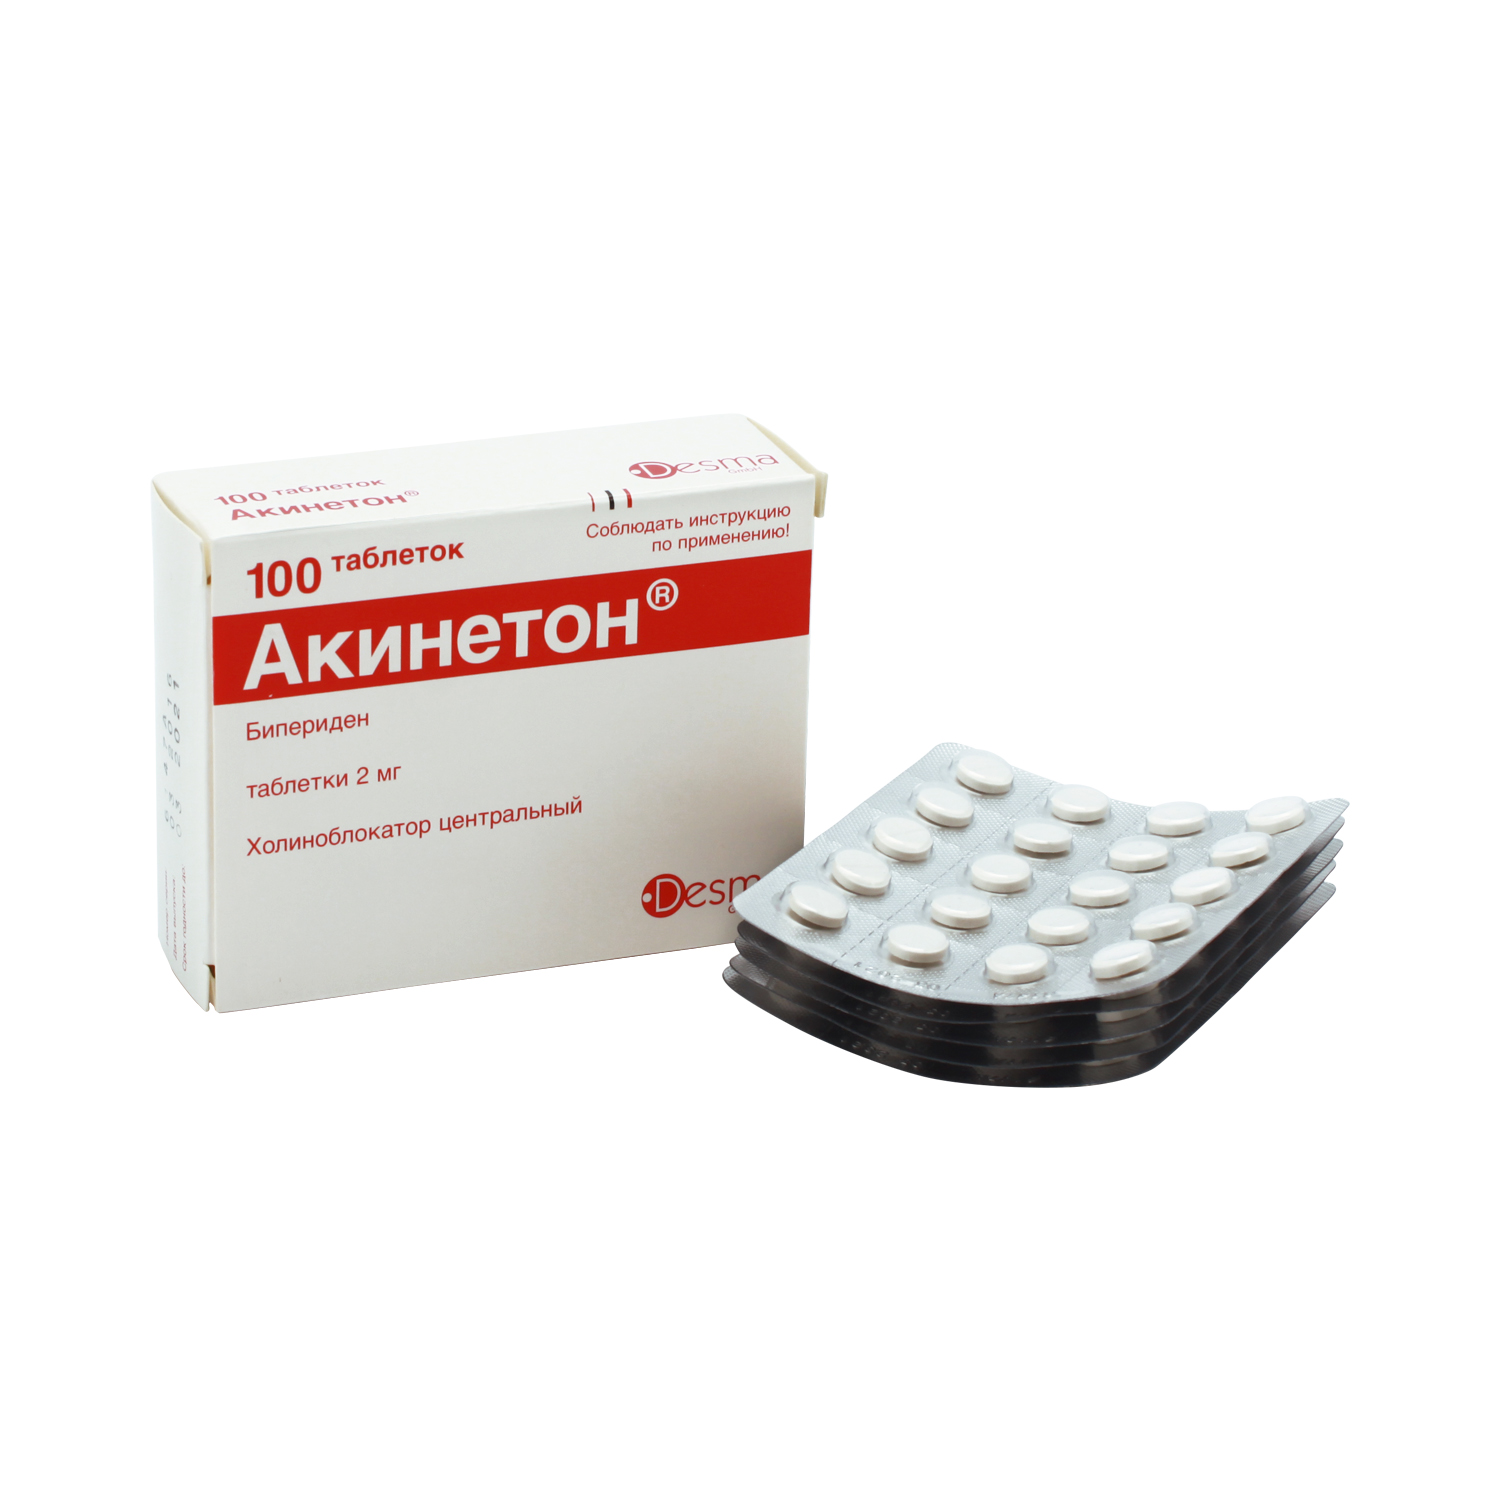 Акинетон Таблетки 2 мг 100 шт  по цене 270,0 руб в интернет .